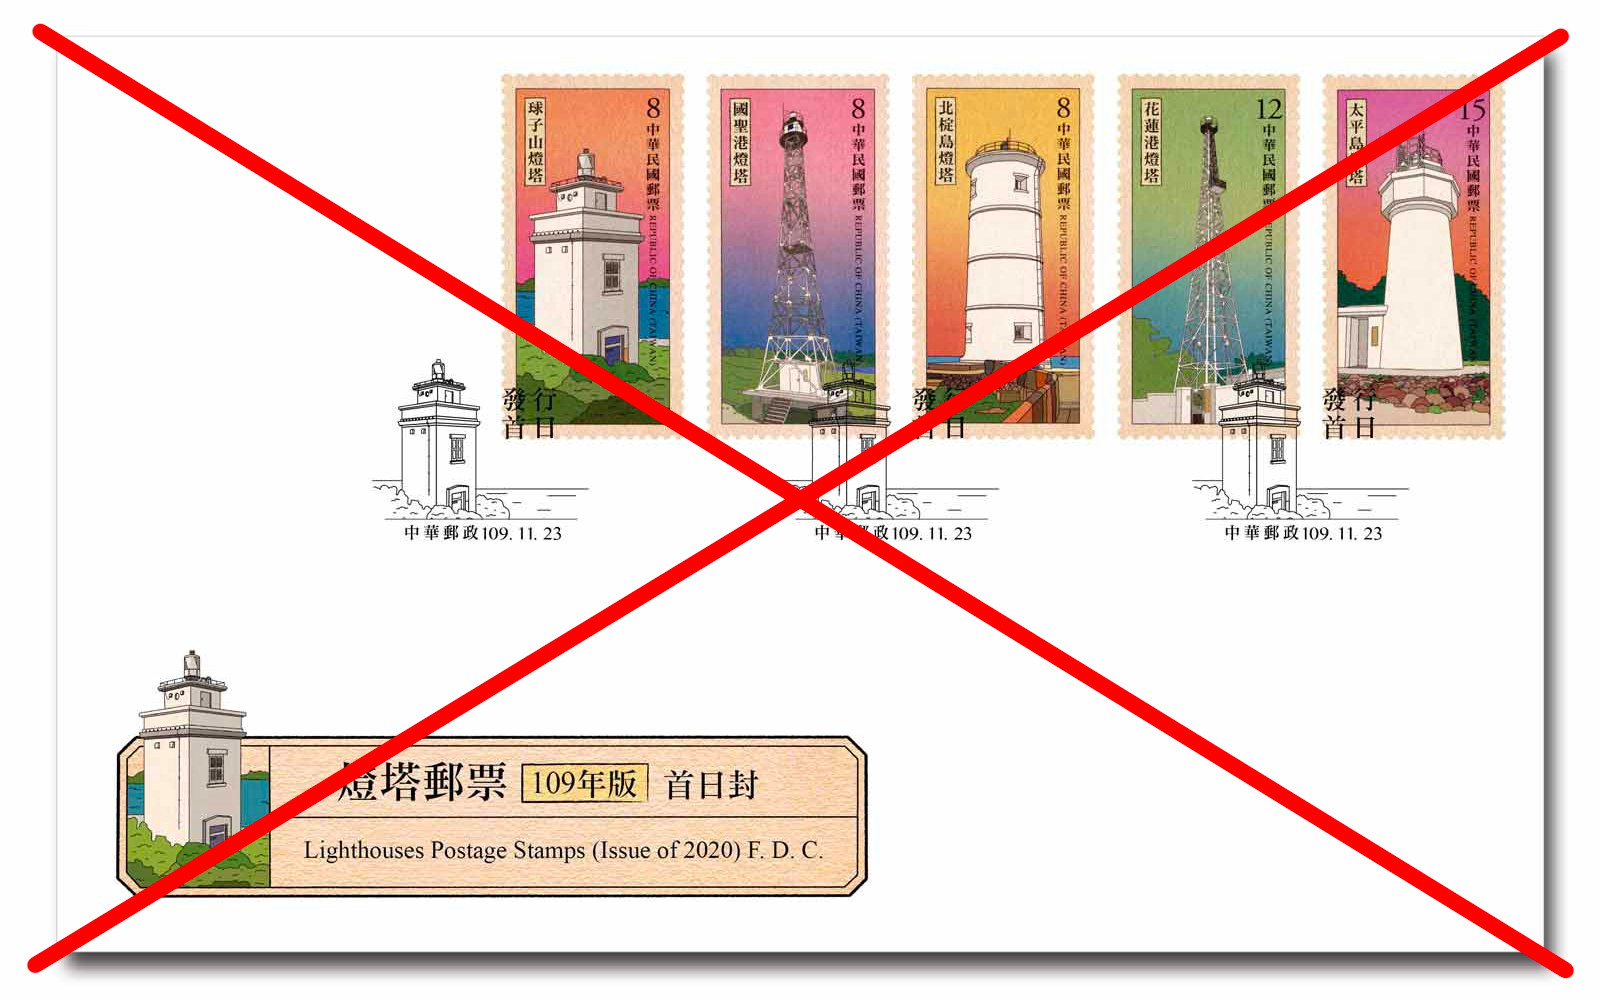 Kiến nghị về bộ tem vi phạm chủ quyền của Việt Nam đối với quần đảo Trường Sa - Ảnh 1.